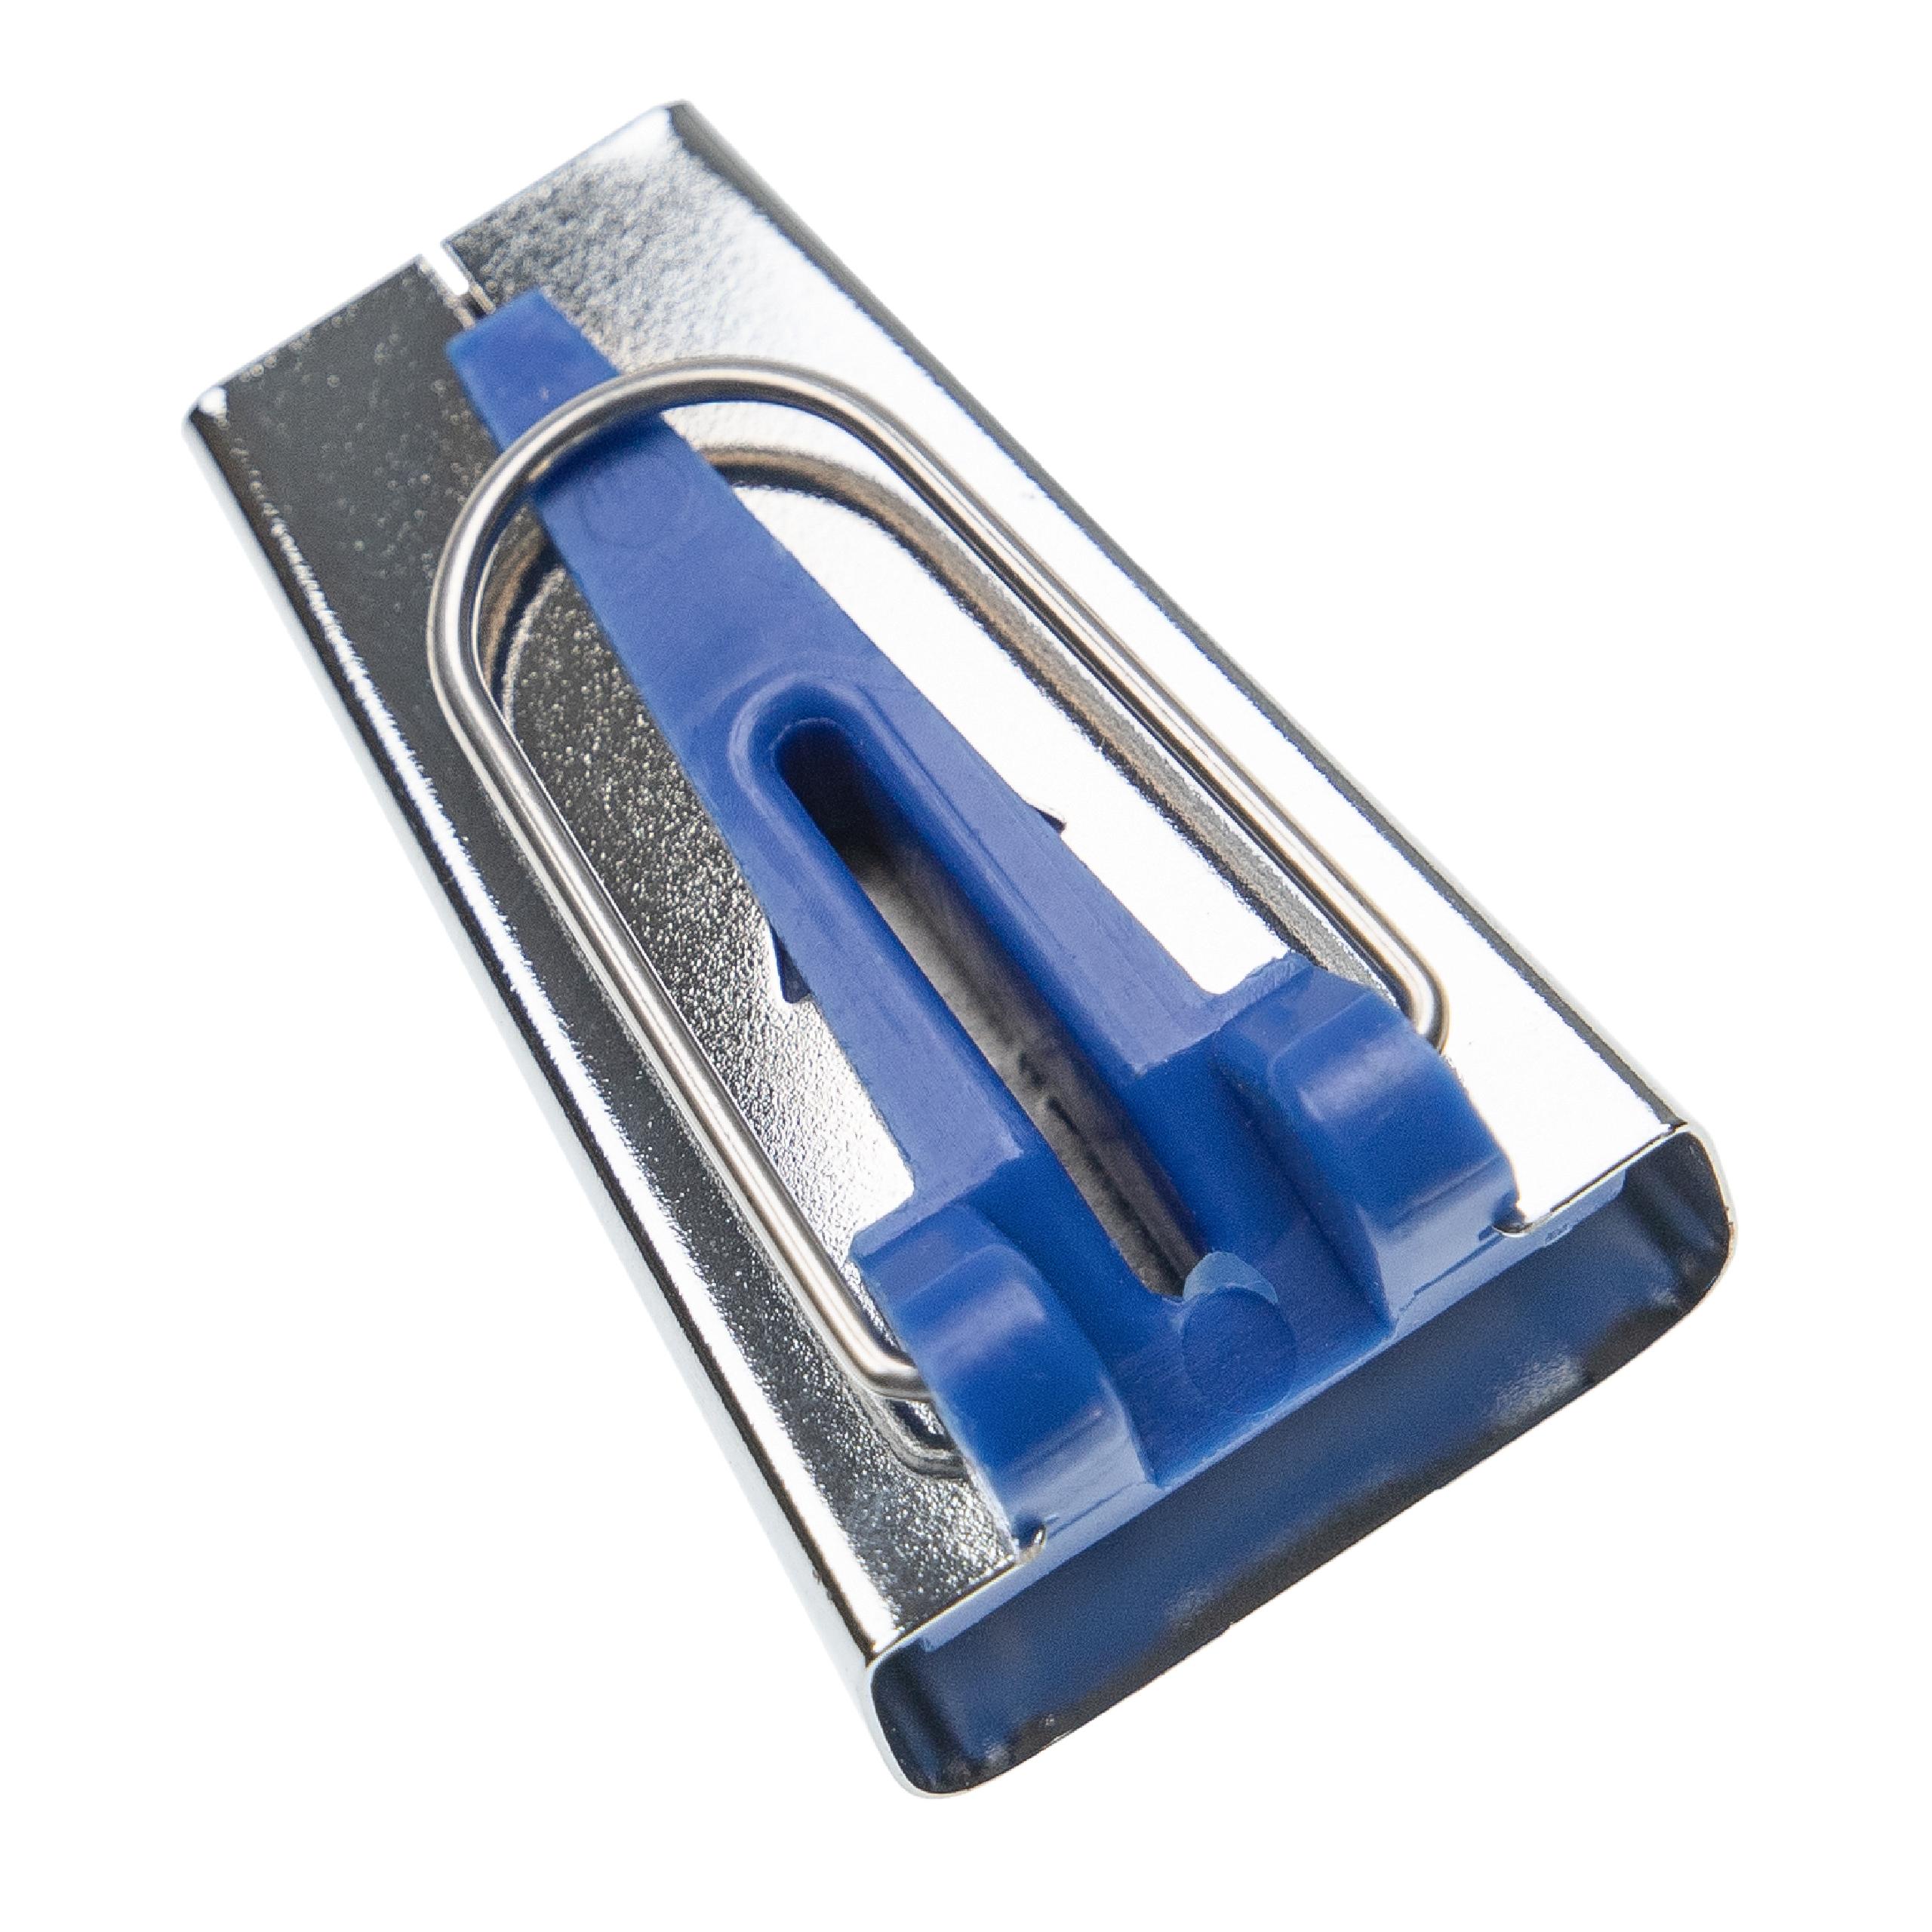 vhbw Schrägbandformer 25 mm für Nähen, Quilten - Bias Tape Maker, Edelstahl / Kunststoff Blau Silber